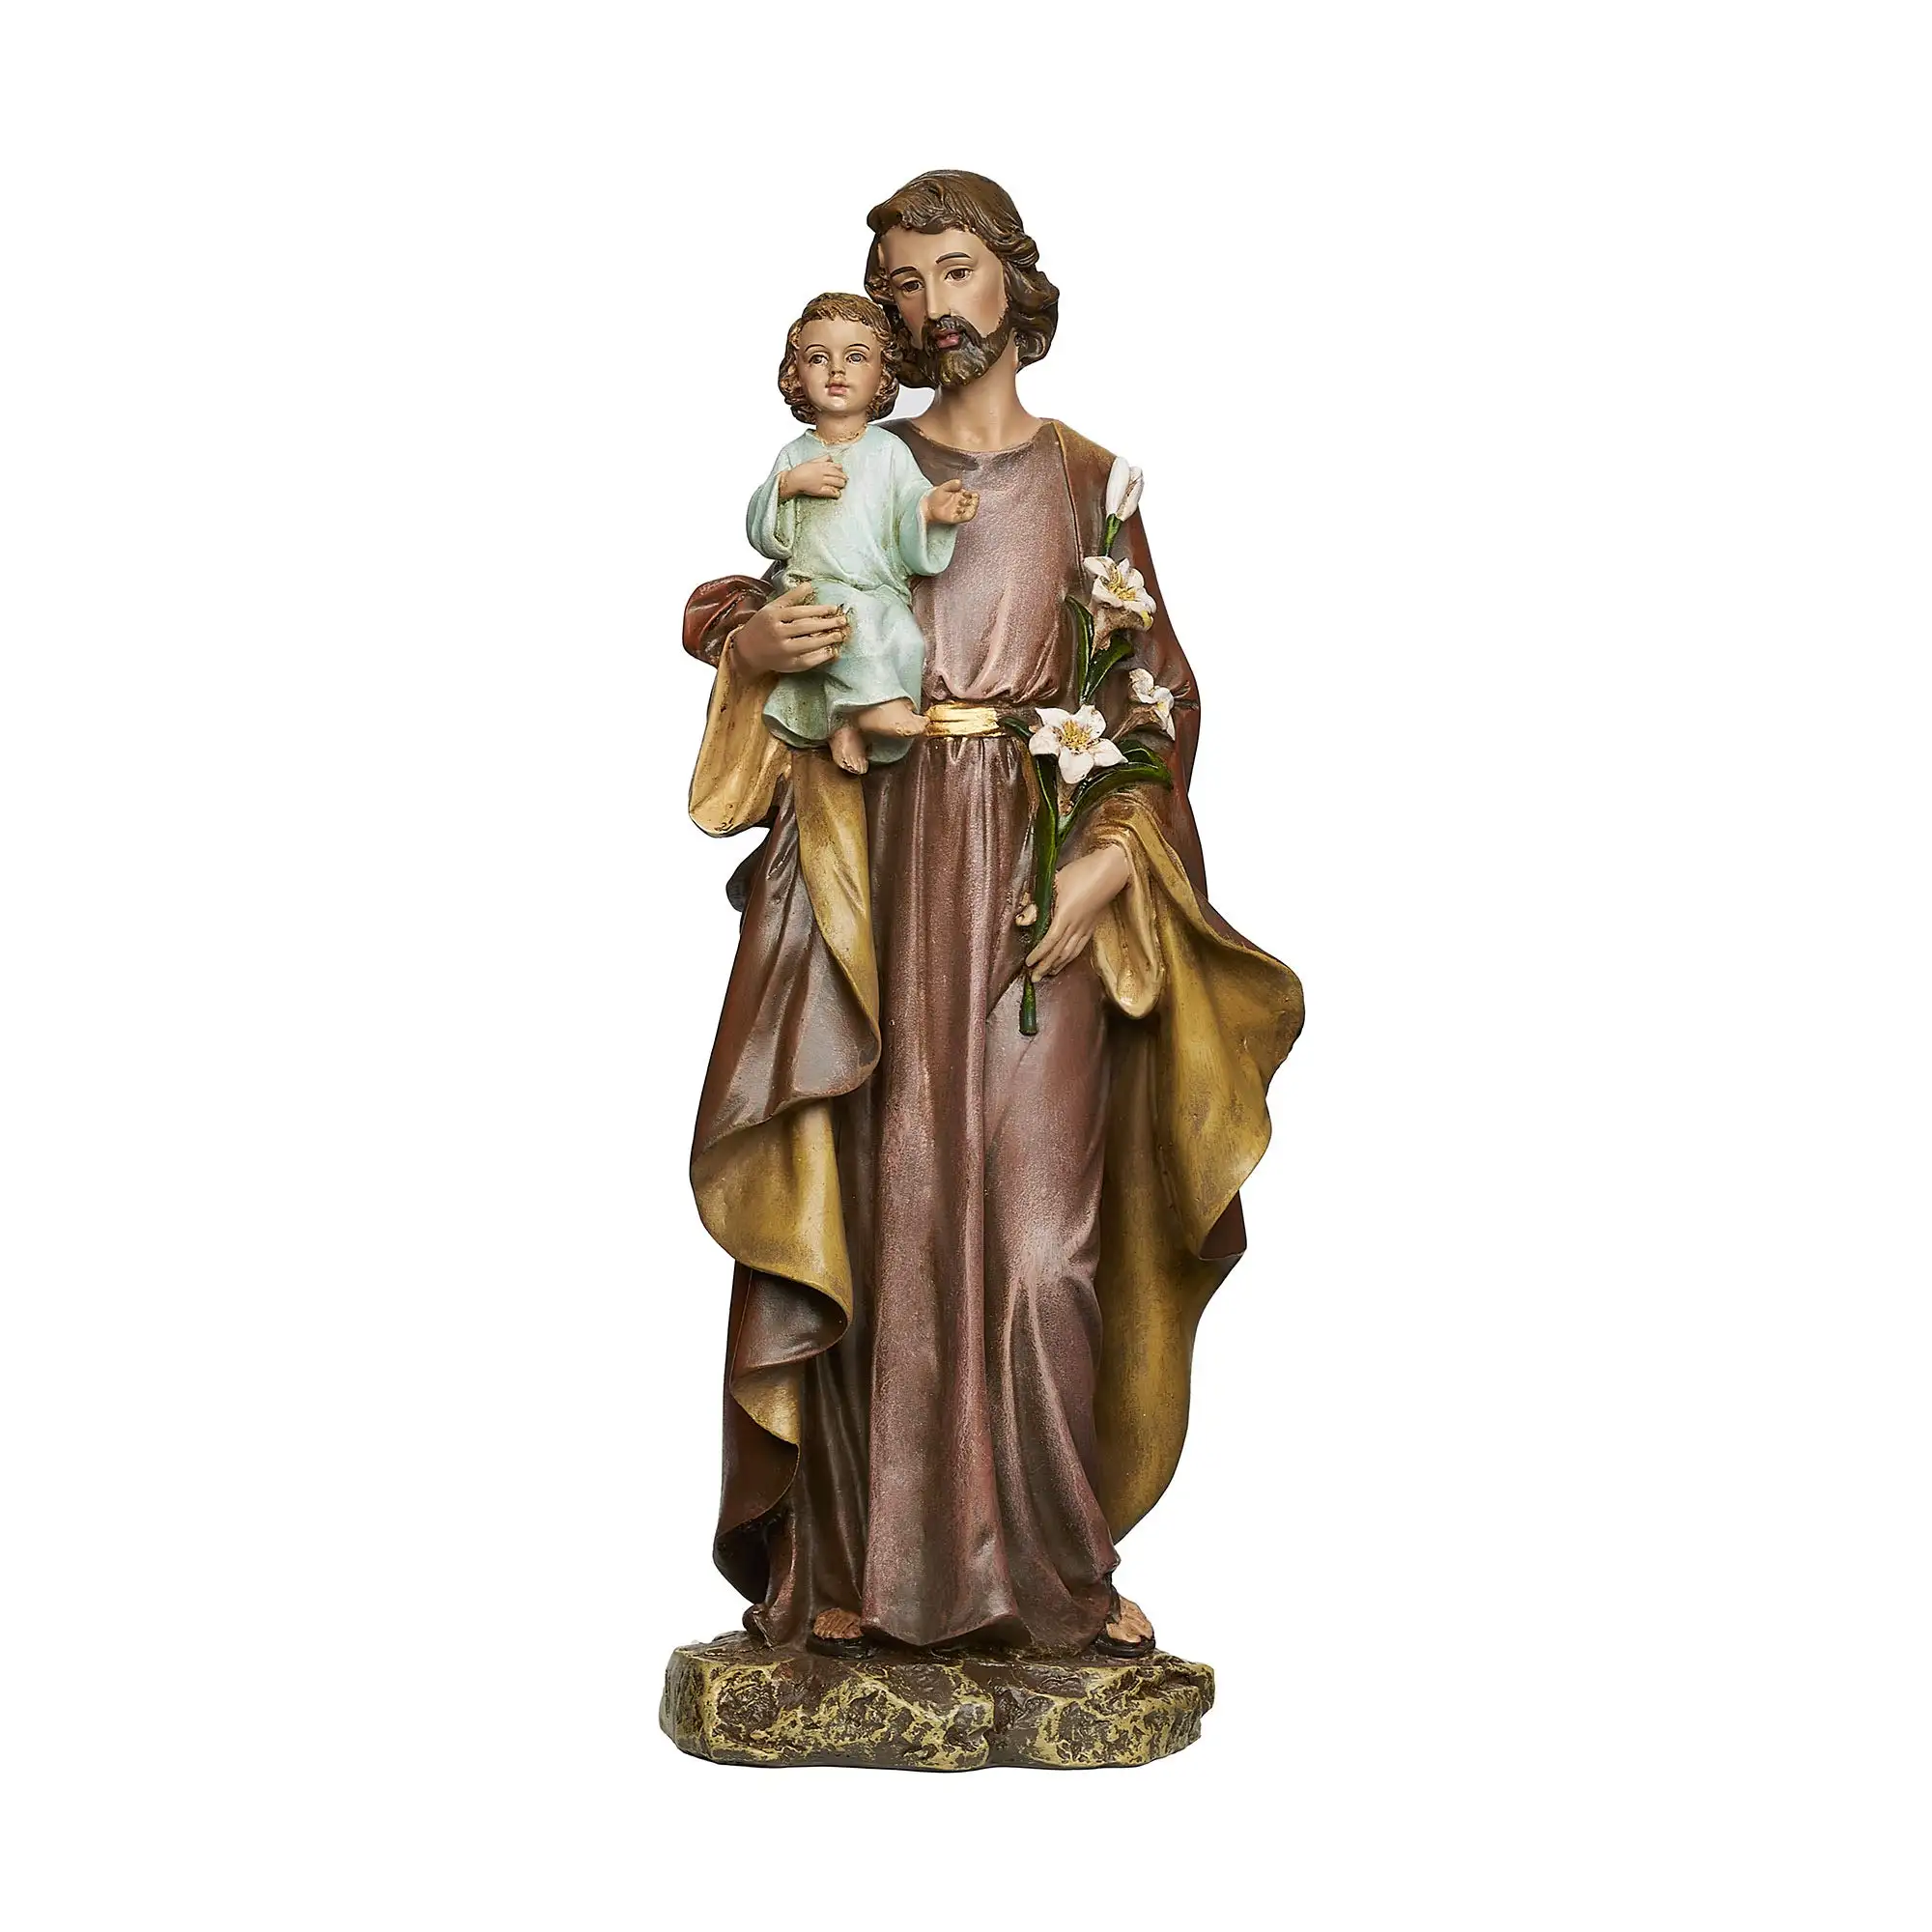 Saint Joseph รูปปั้นพระเยซูสำหรับเด็ก,งานฝีมือเรซินรูปปั้นทางศาสนาคาทอลิกทำจากเรซิ่นตามสั่ง